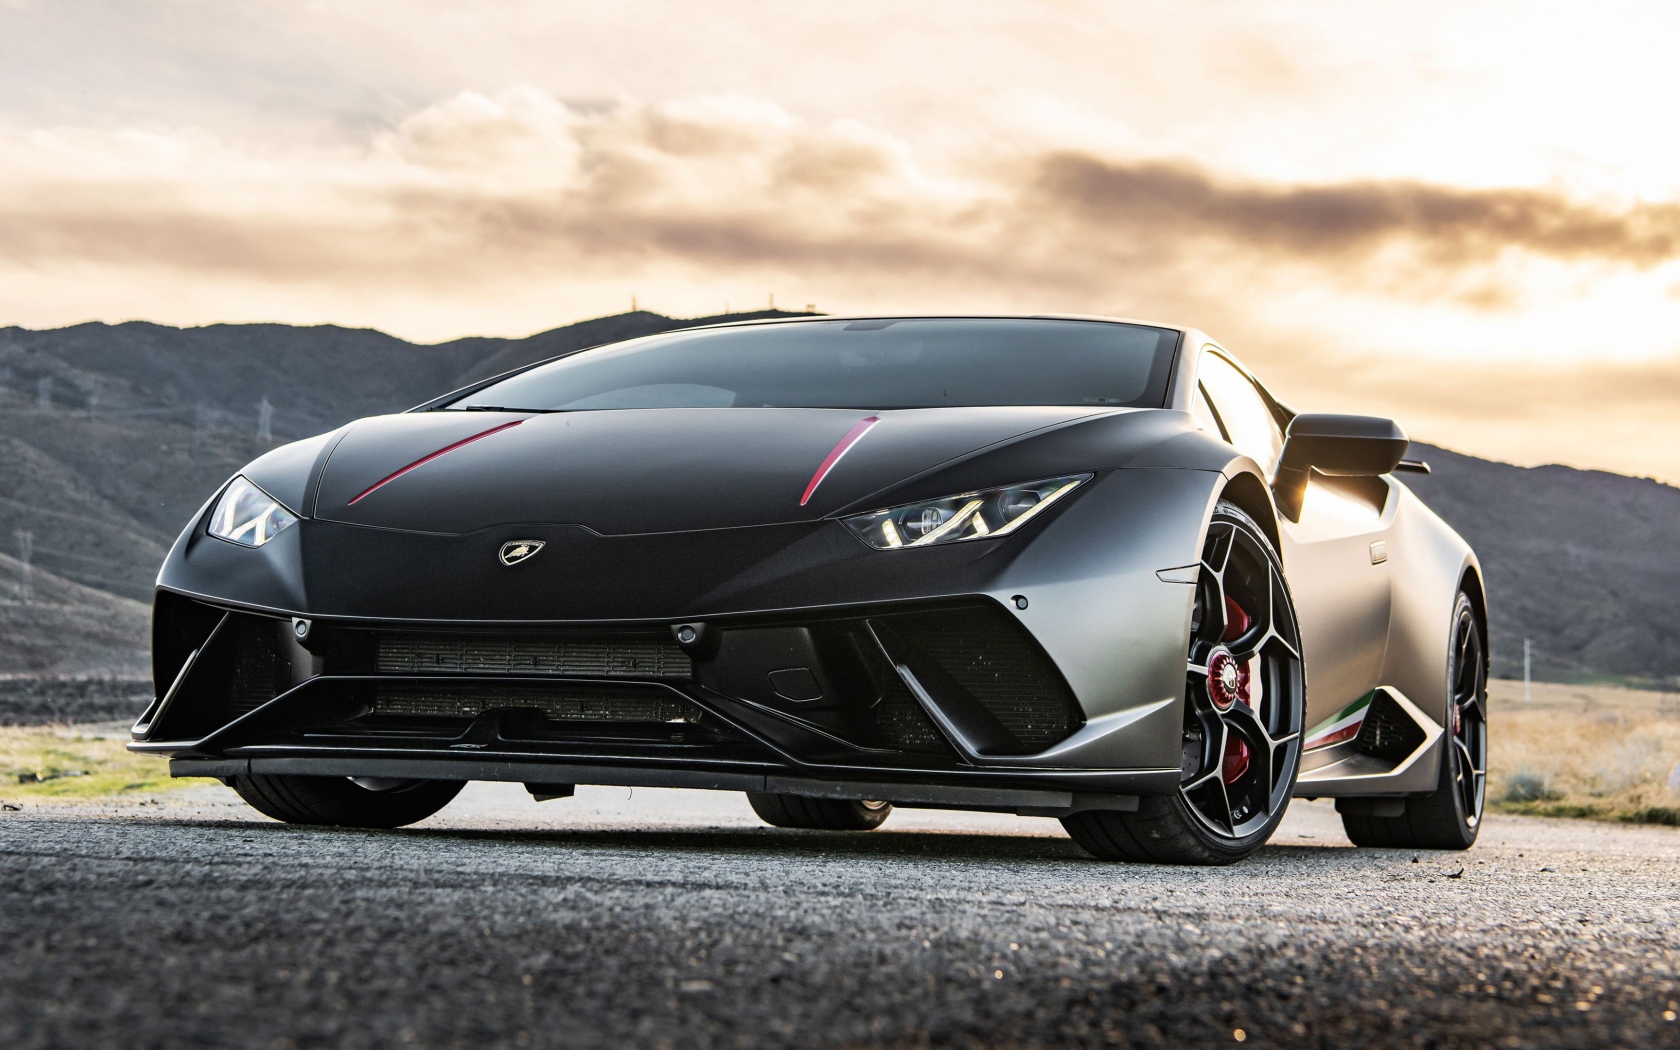 Черный спортивный Lamborghini Huracan Performante 2020 года на асфальте